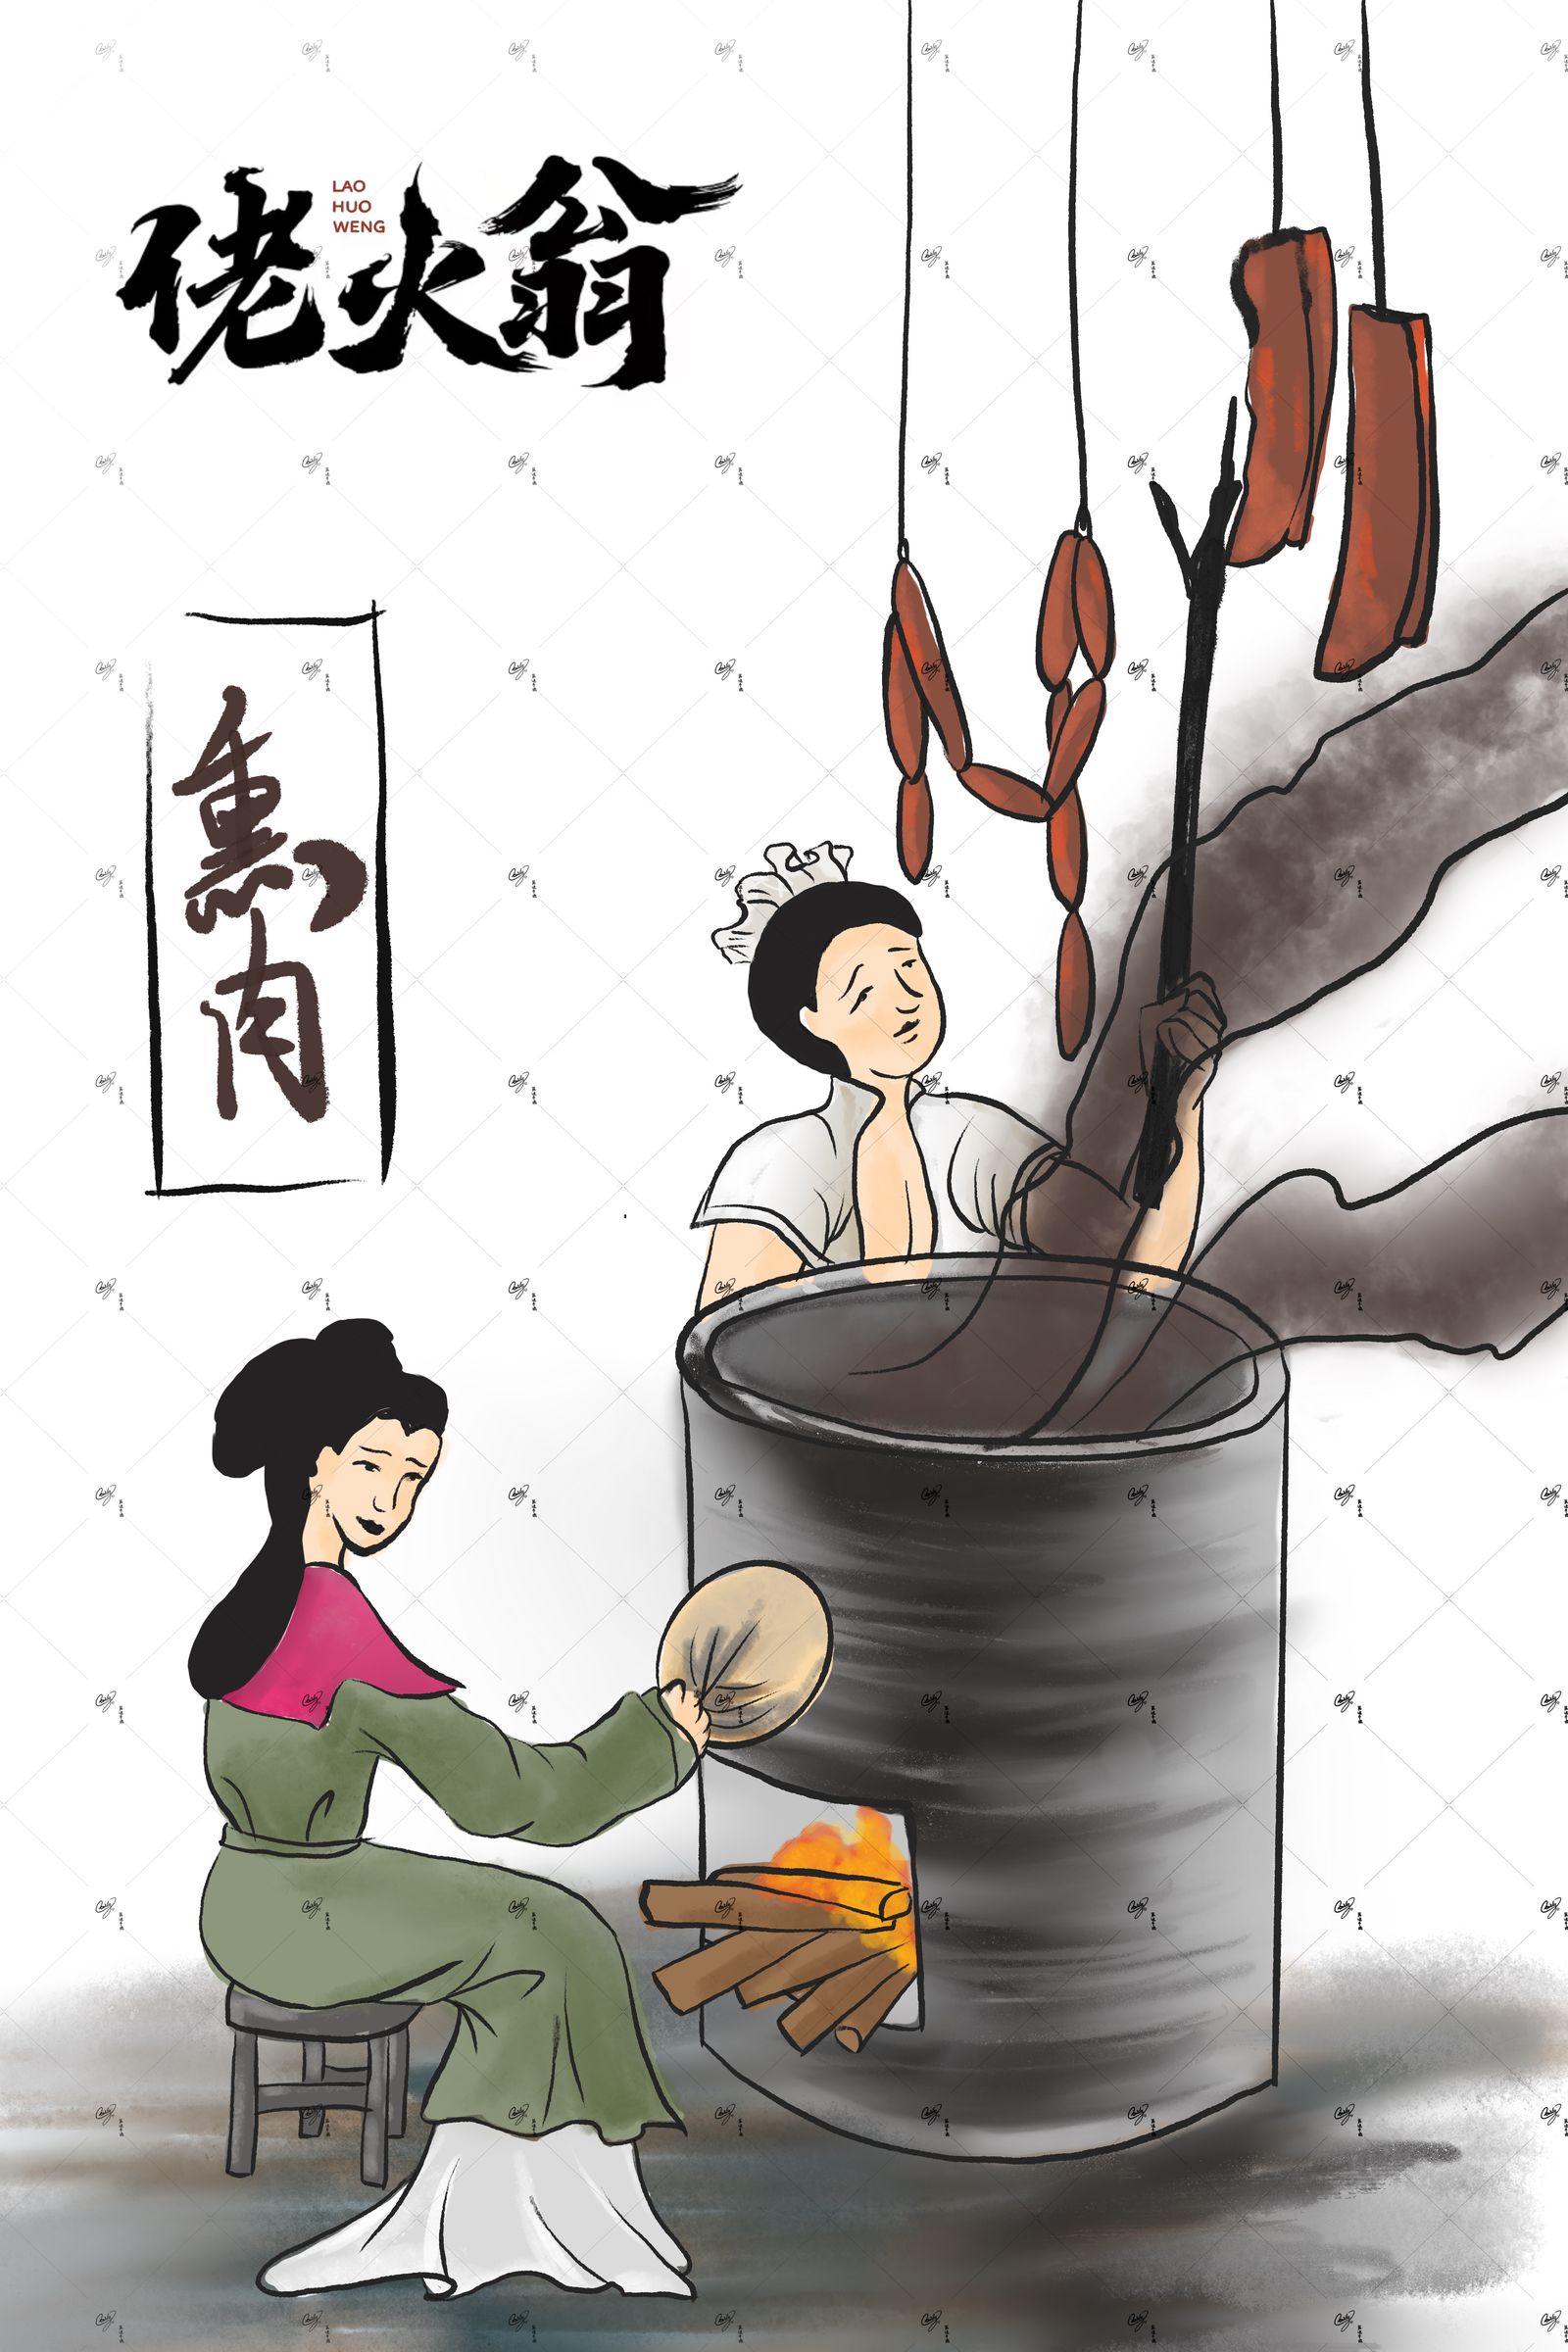 国风壁画型之中华美食插画图片壁纸